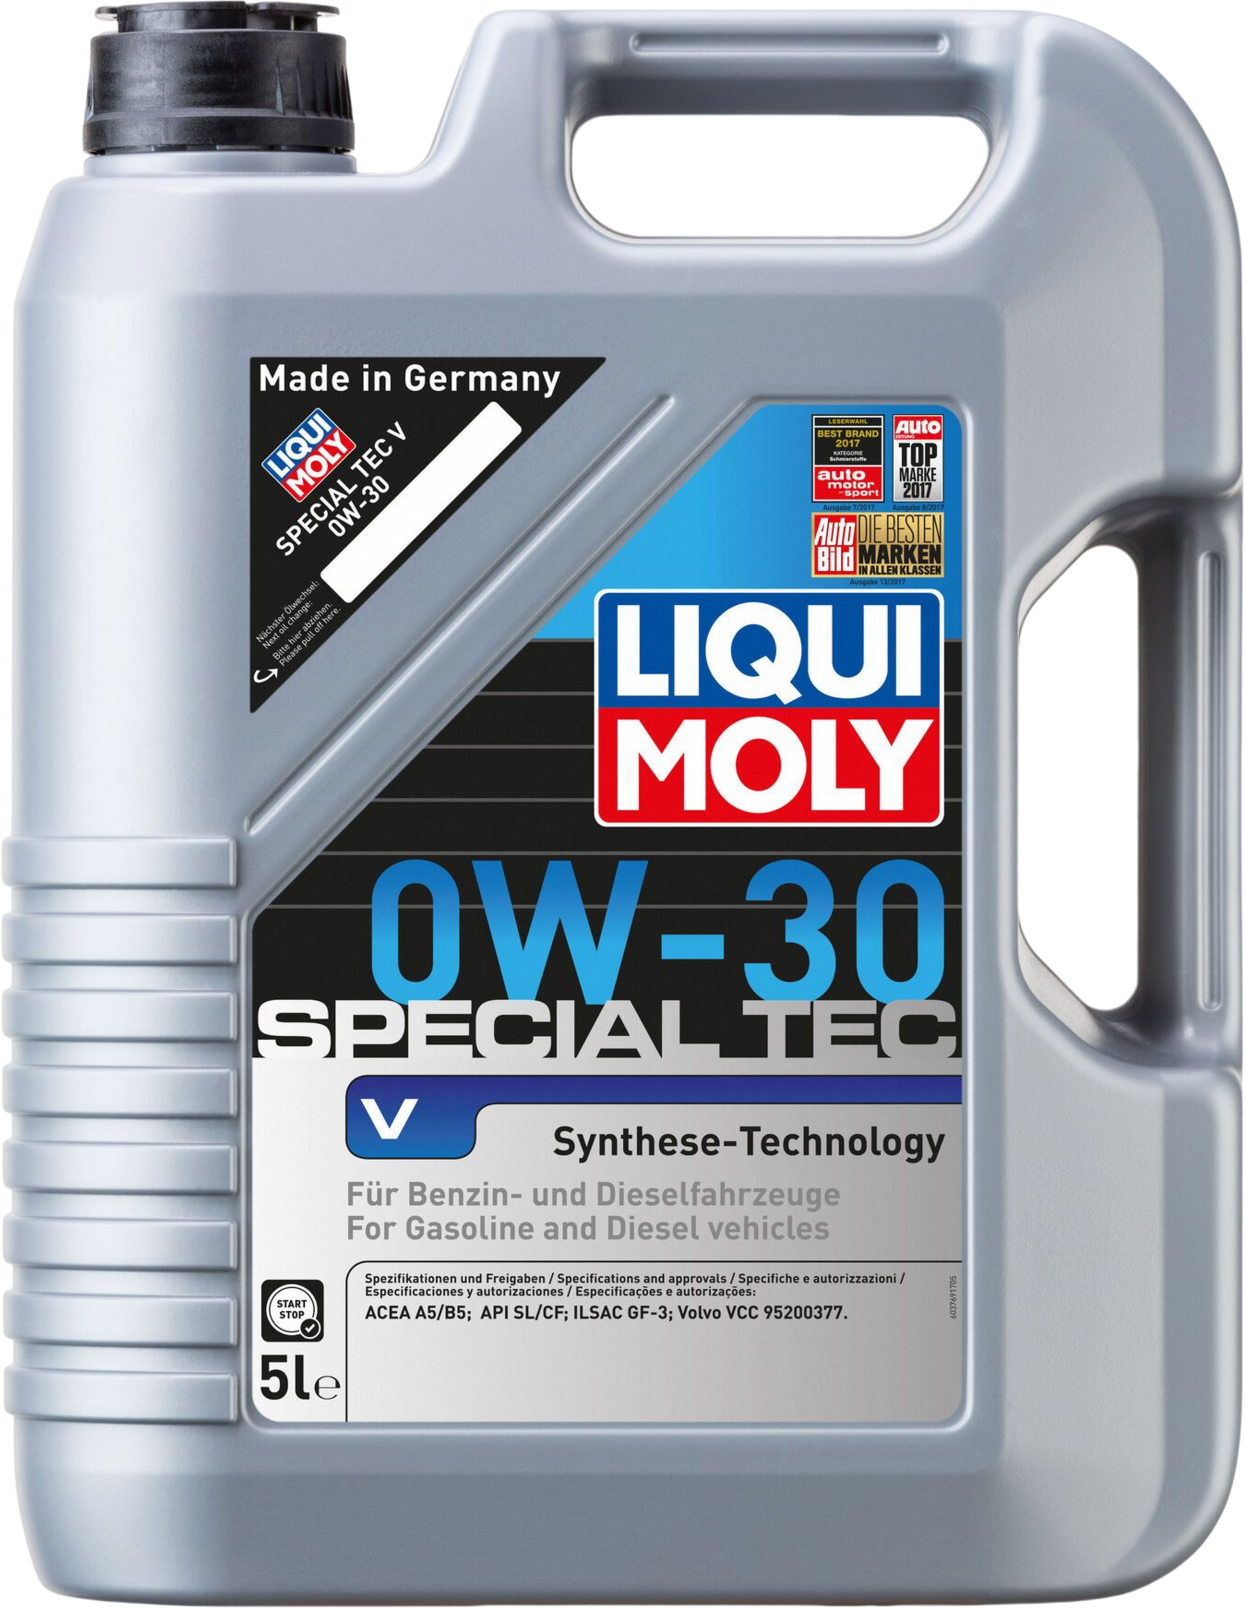 Liqui Moly Special Tec V 0W-30, 5 lt